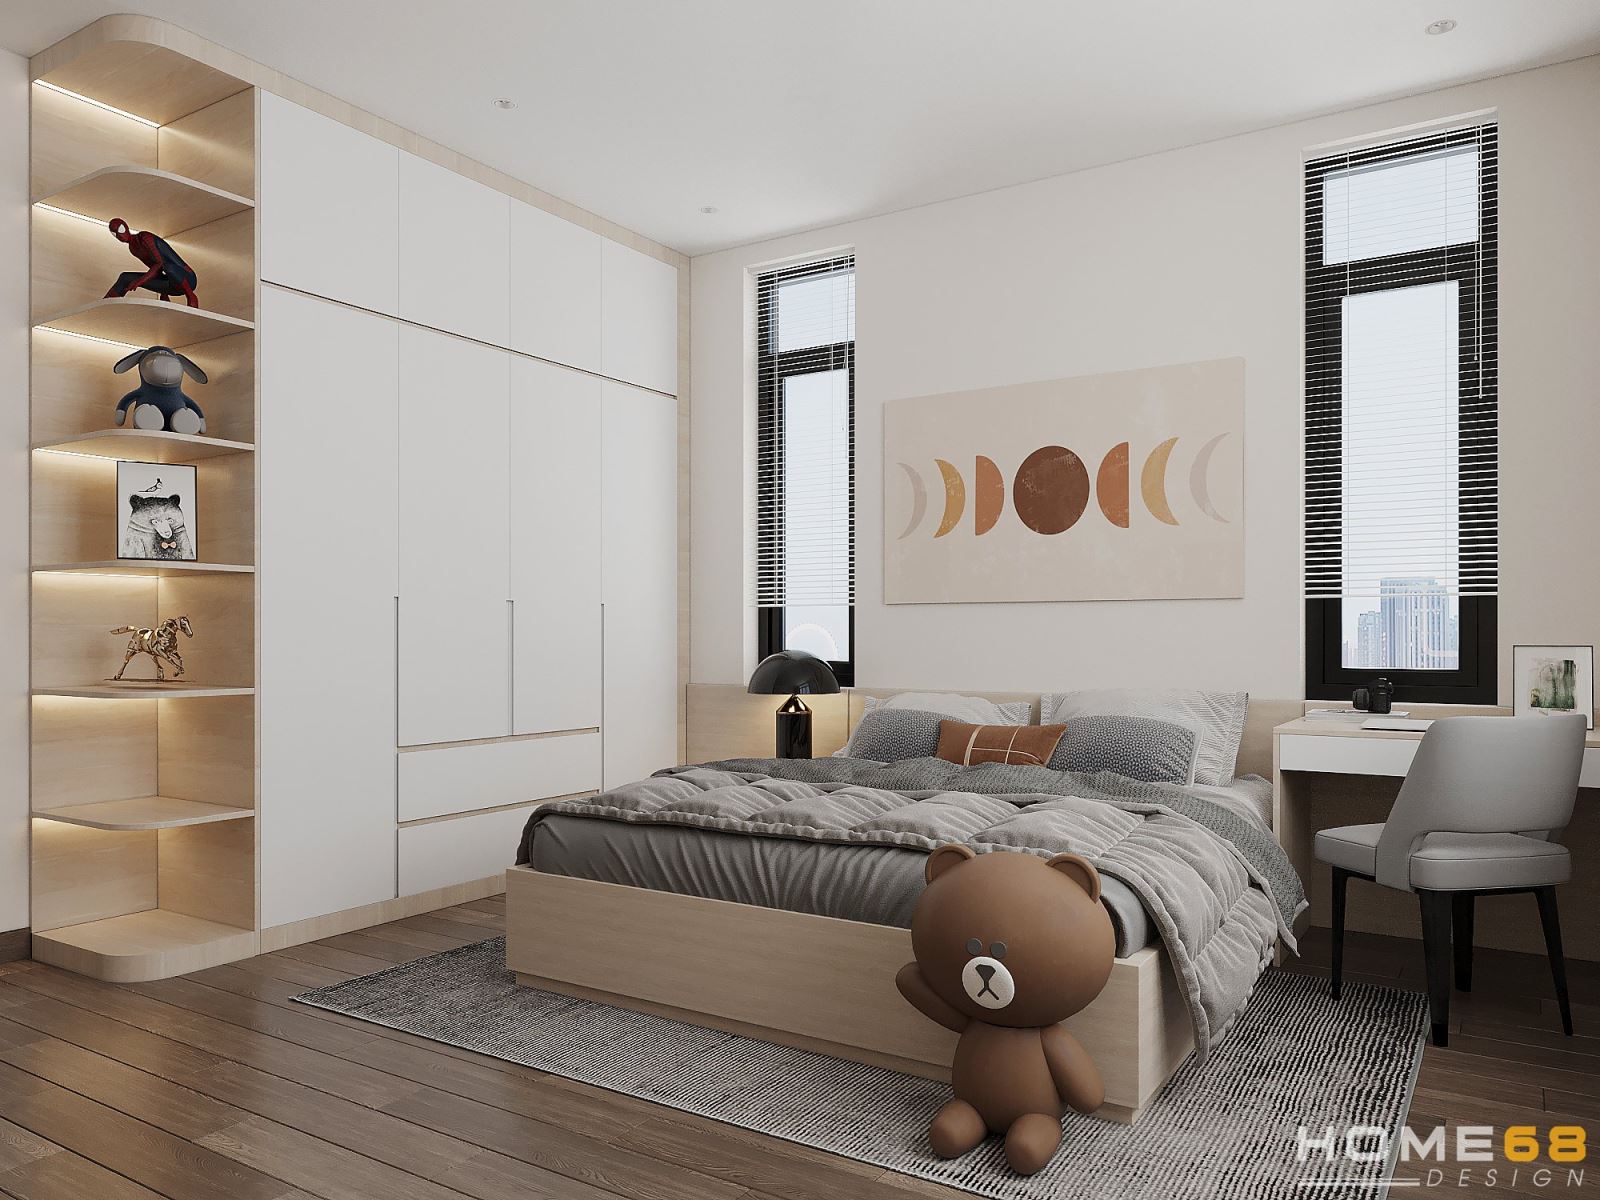 Thiết kế nội thất phòng ngủ con trai hiện đại, độc đáo - HOME68